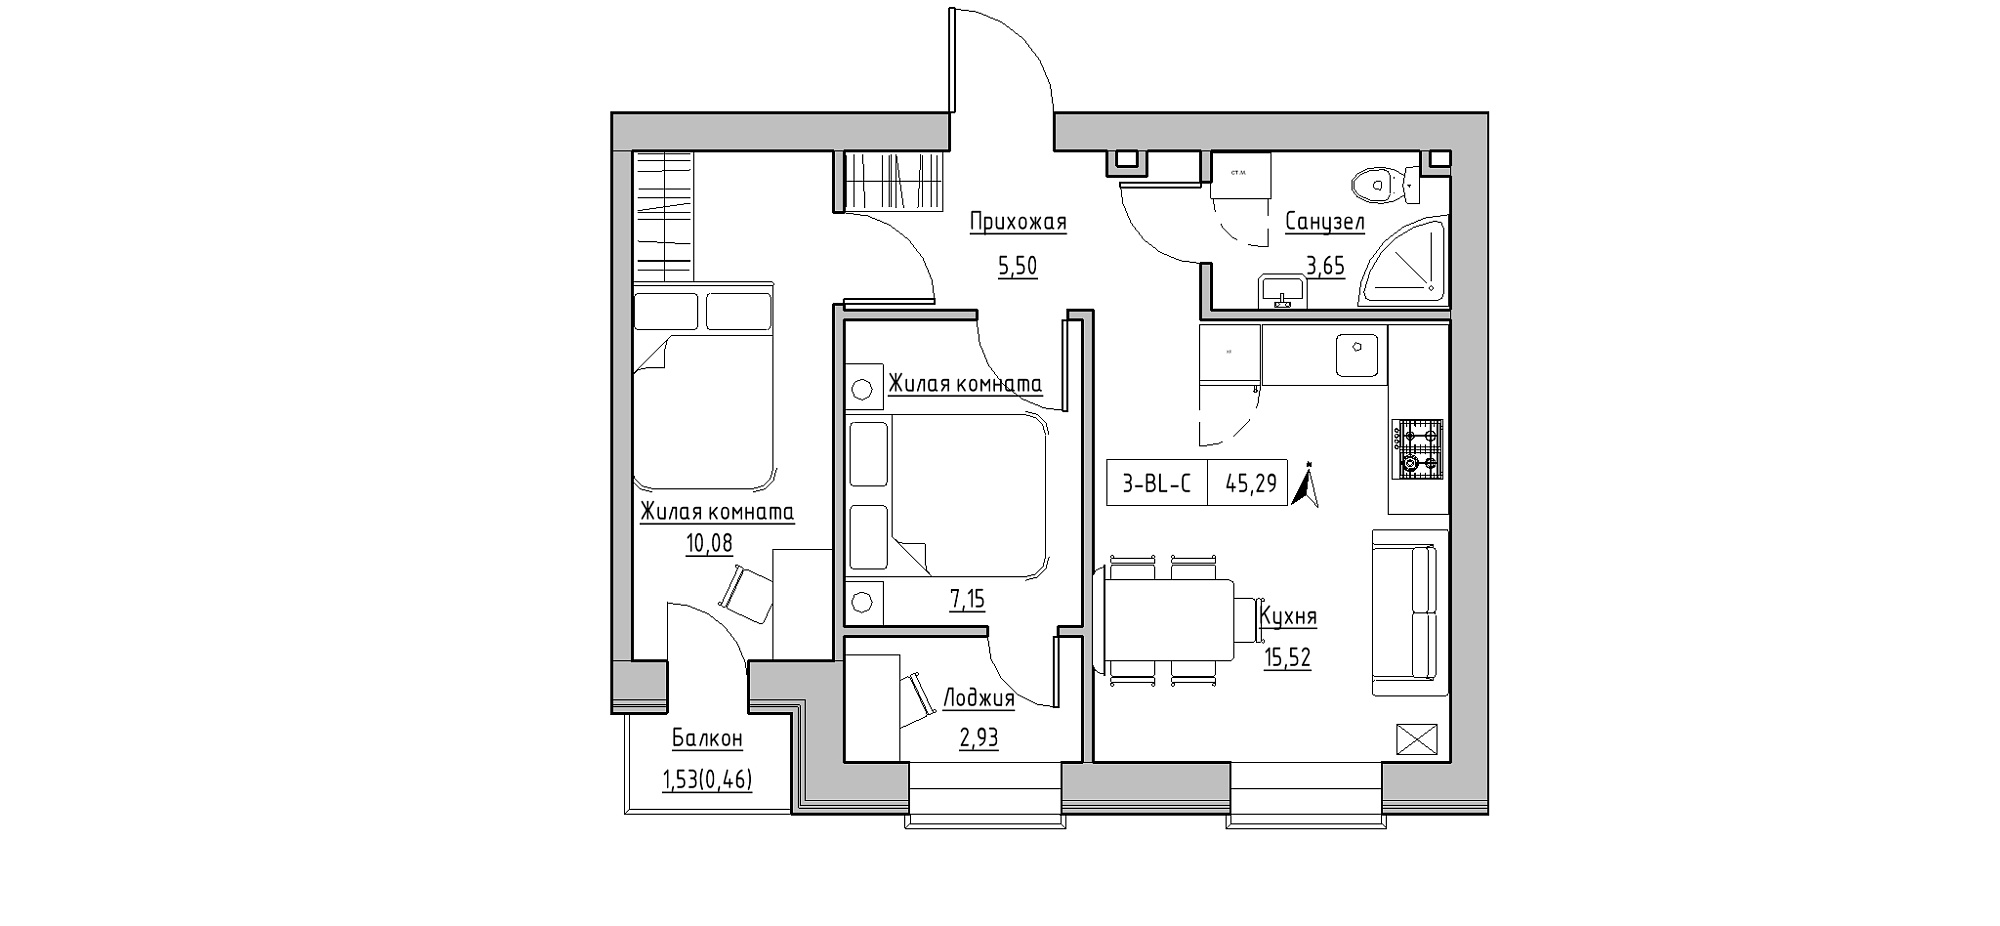 Планування 2-к квартира площею 45.29м2, KS-020-03/0008.